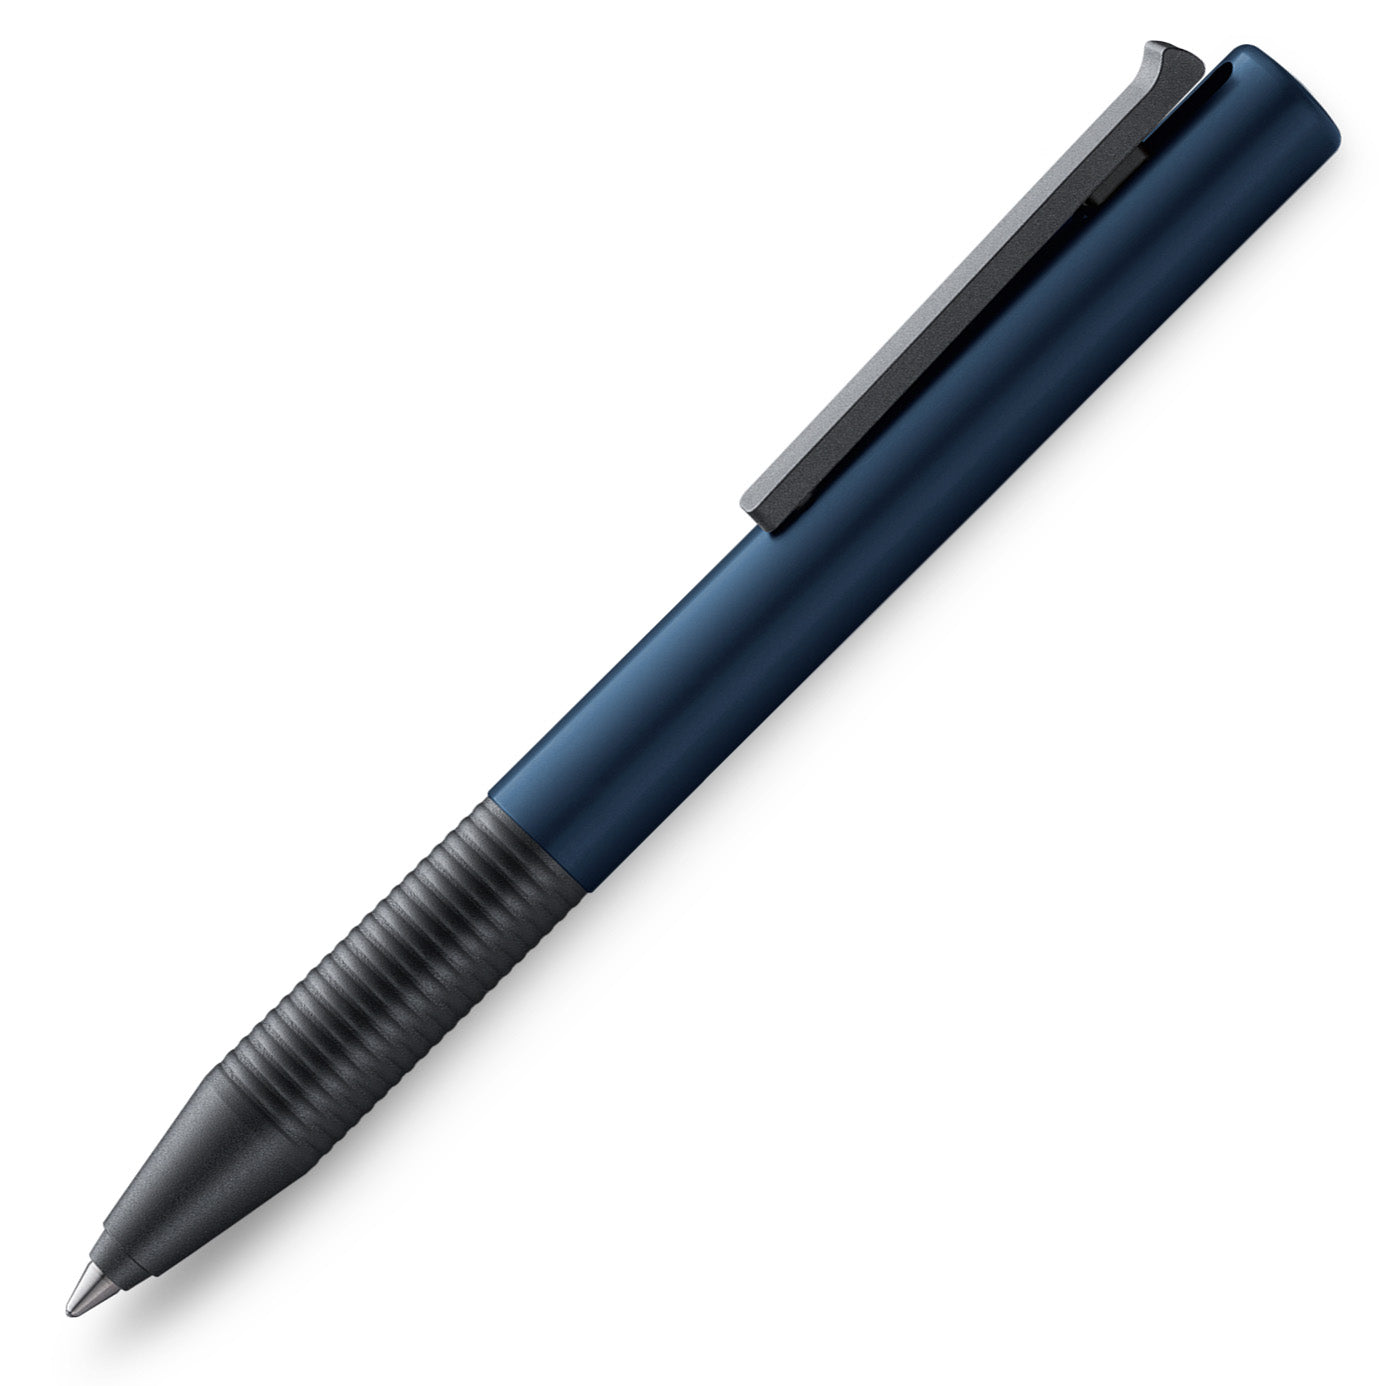 Lamy Tipo Capless Rollerball pen in blueblack aluminum